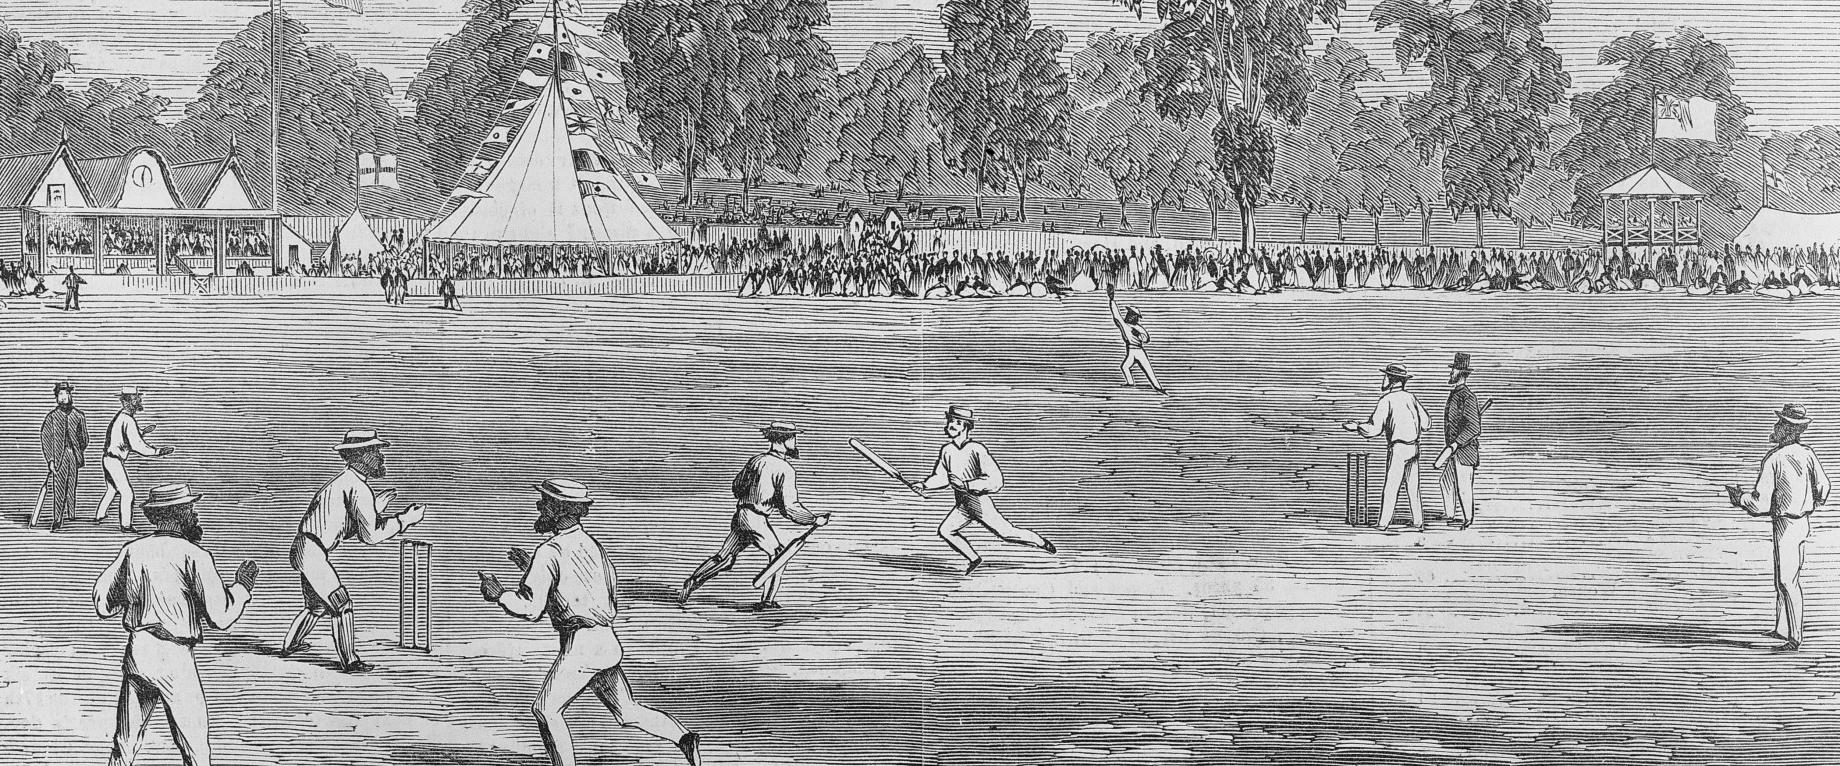 aboriginal cricket team tours england